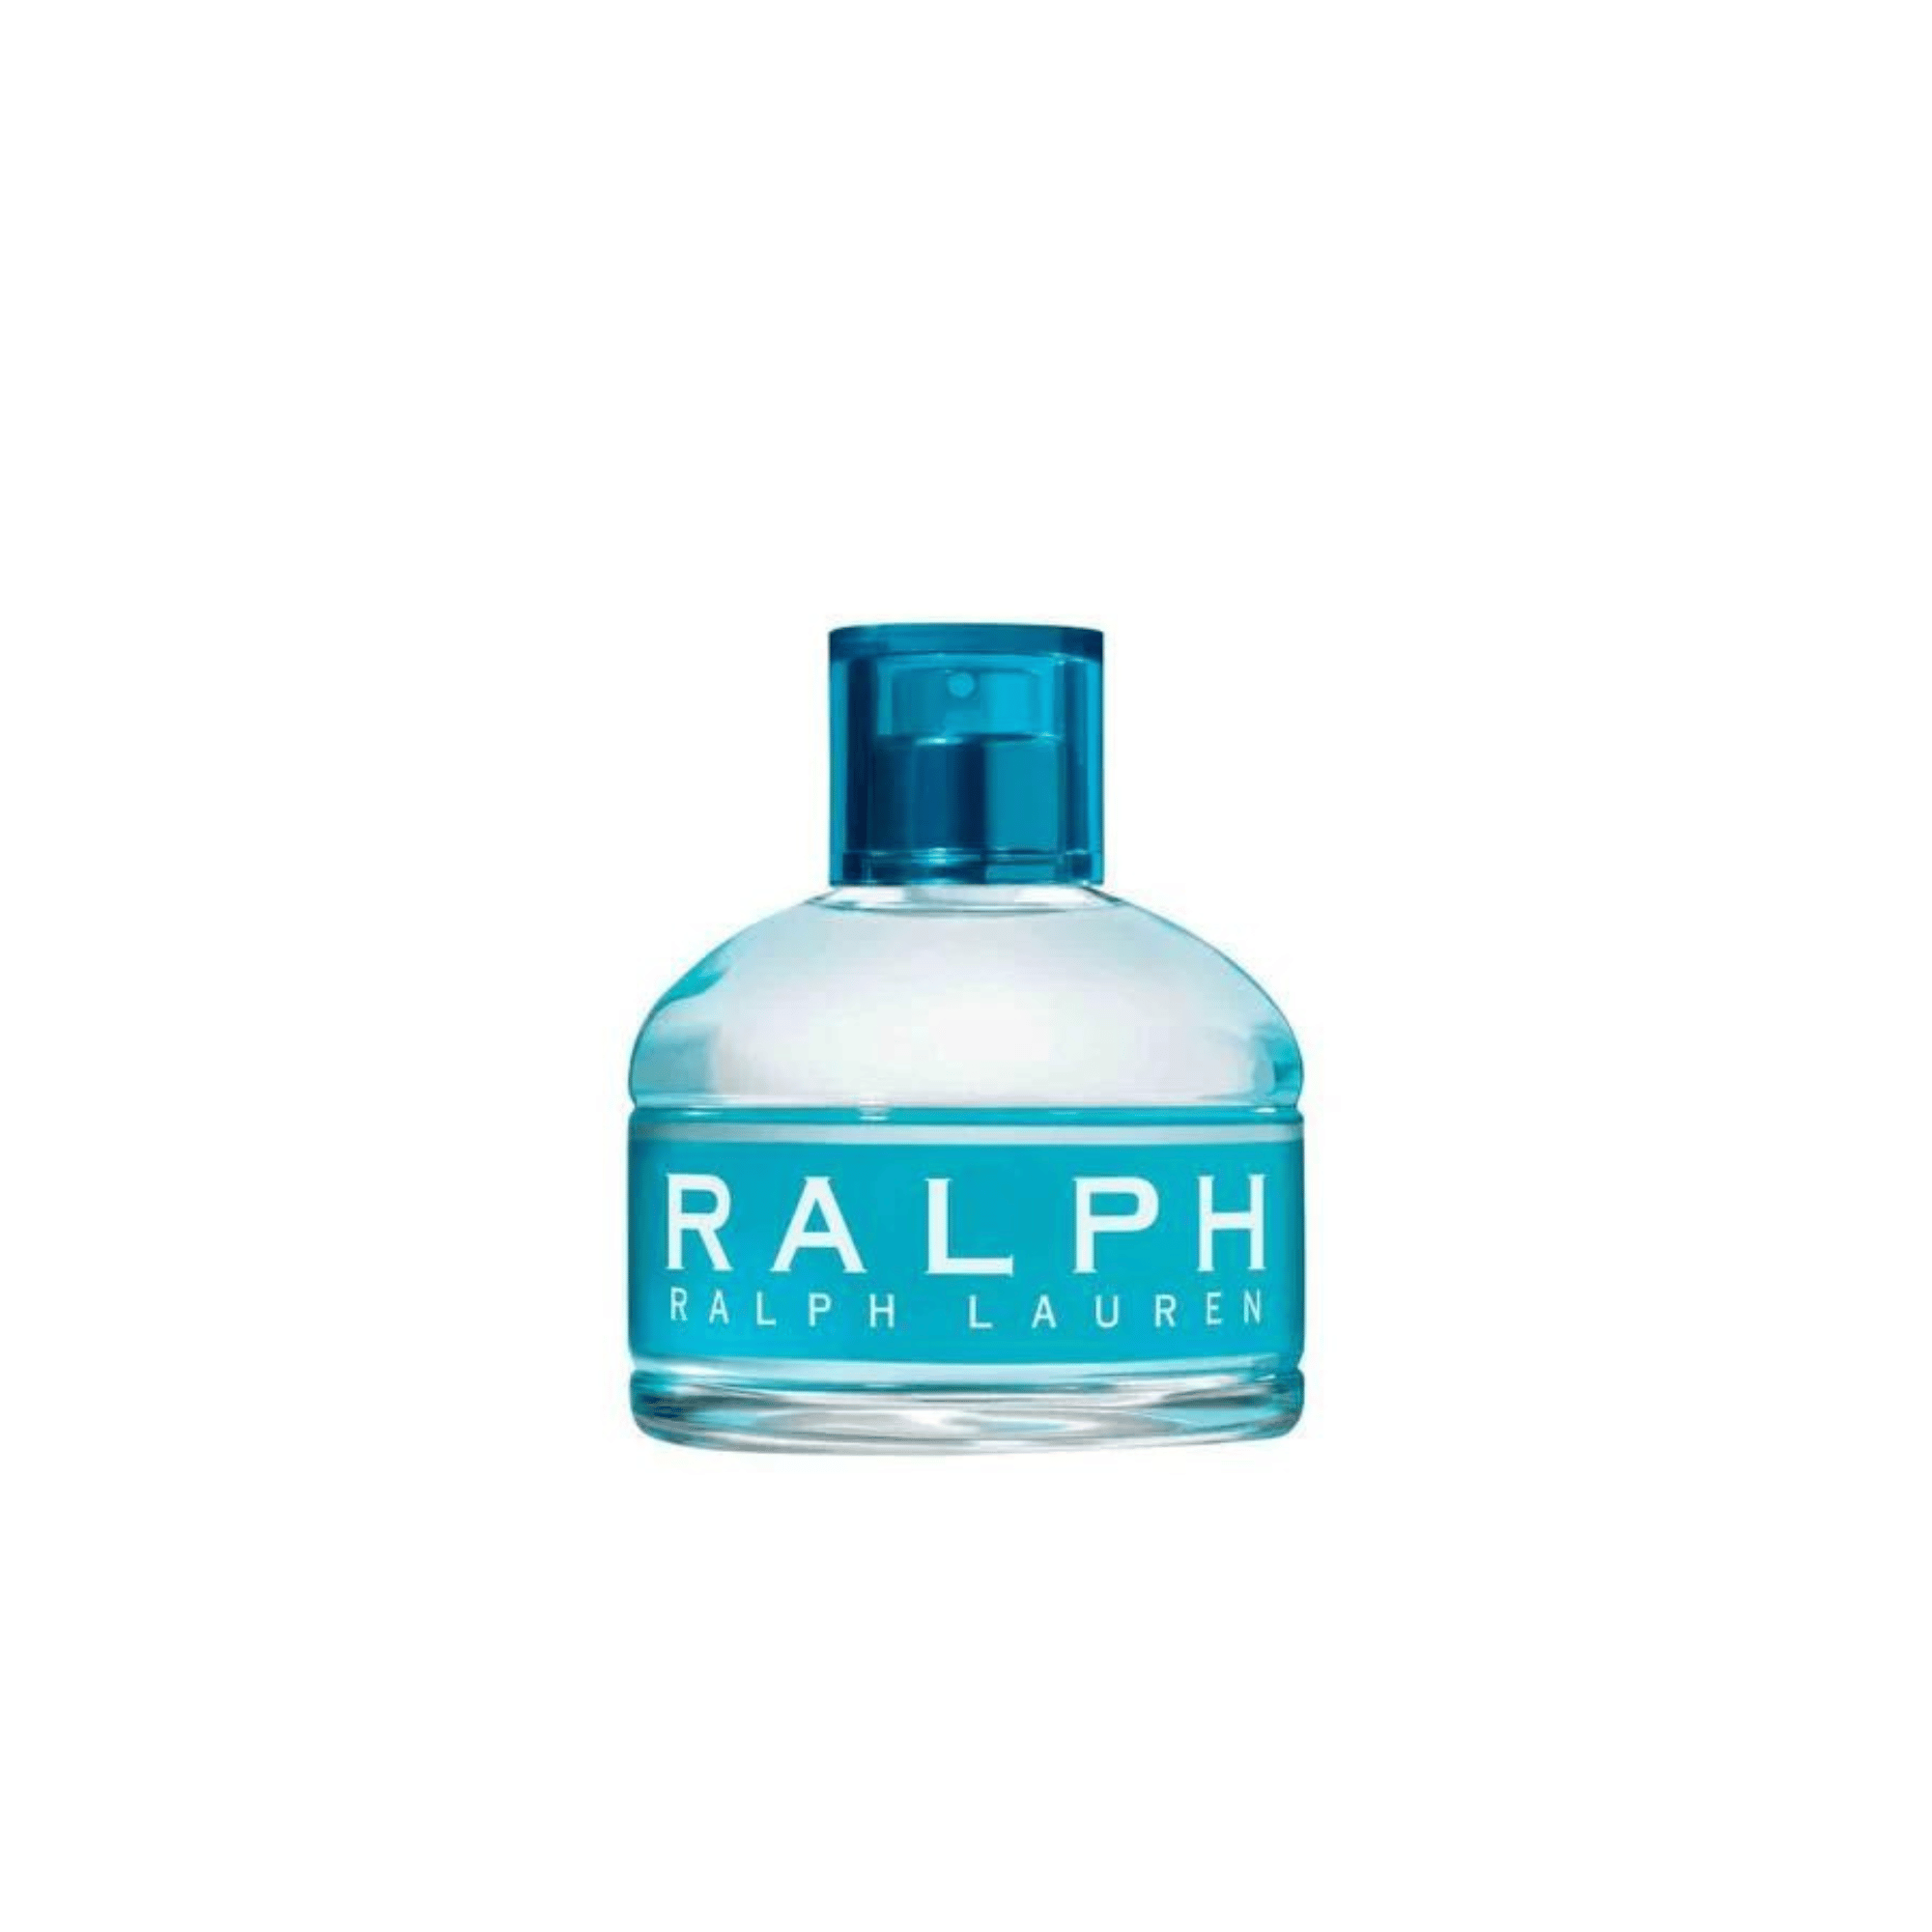 RALPH by RALPH LAUREN Eau de Toilette